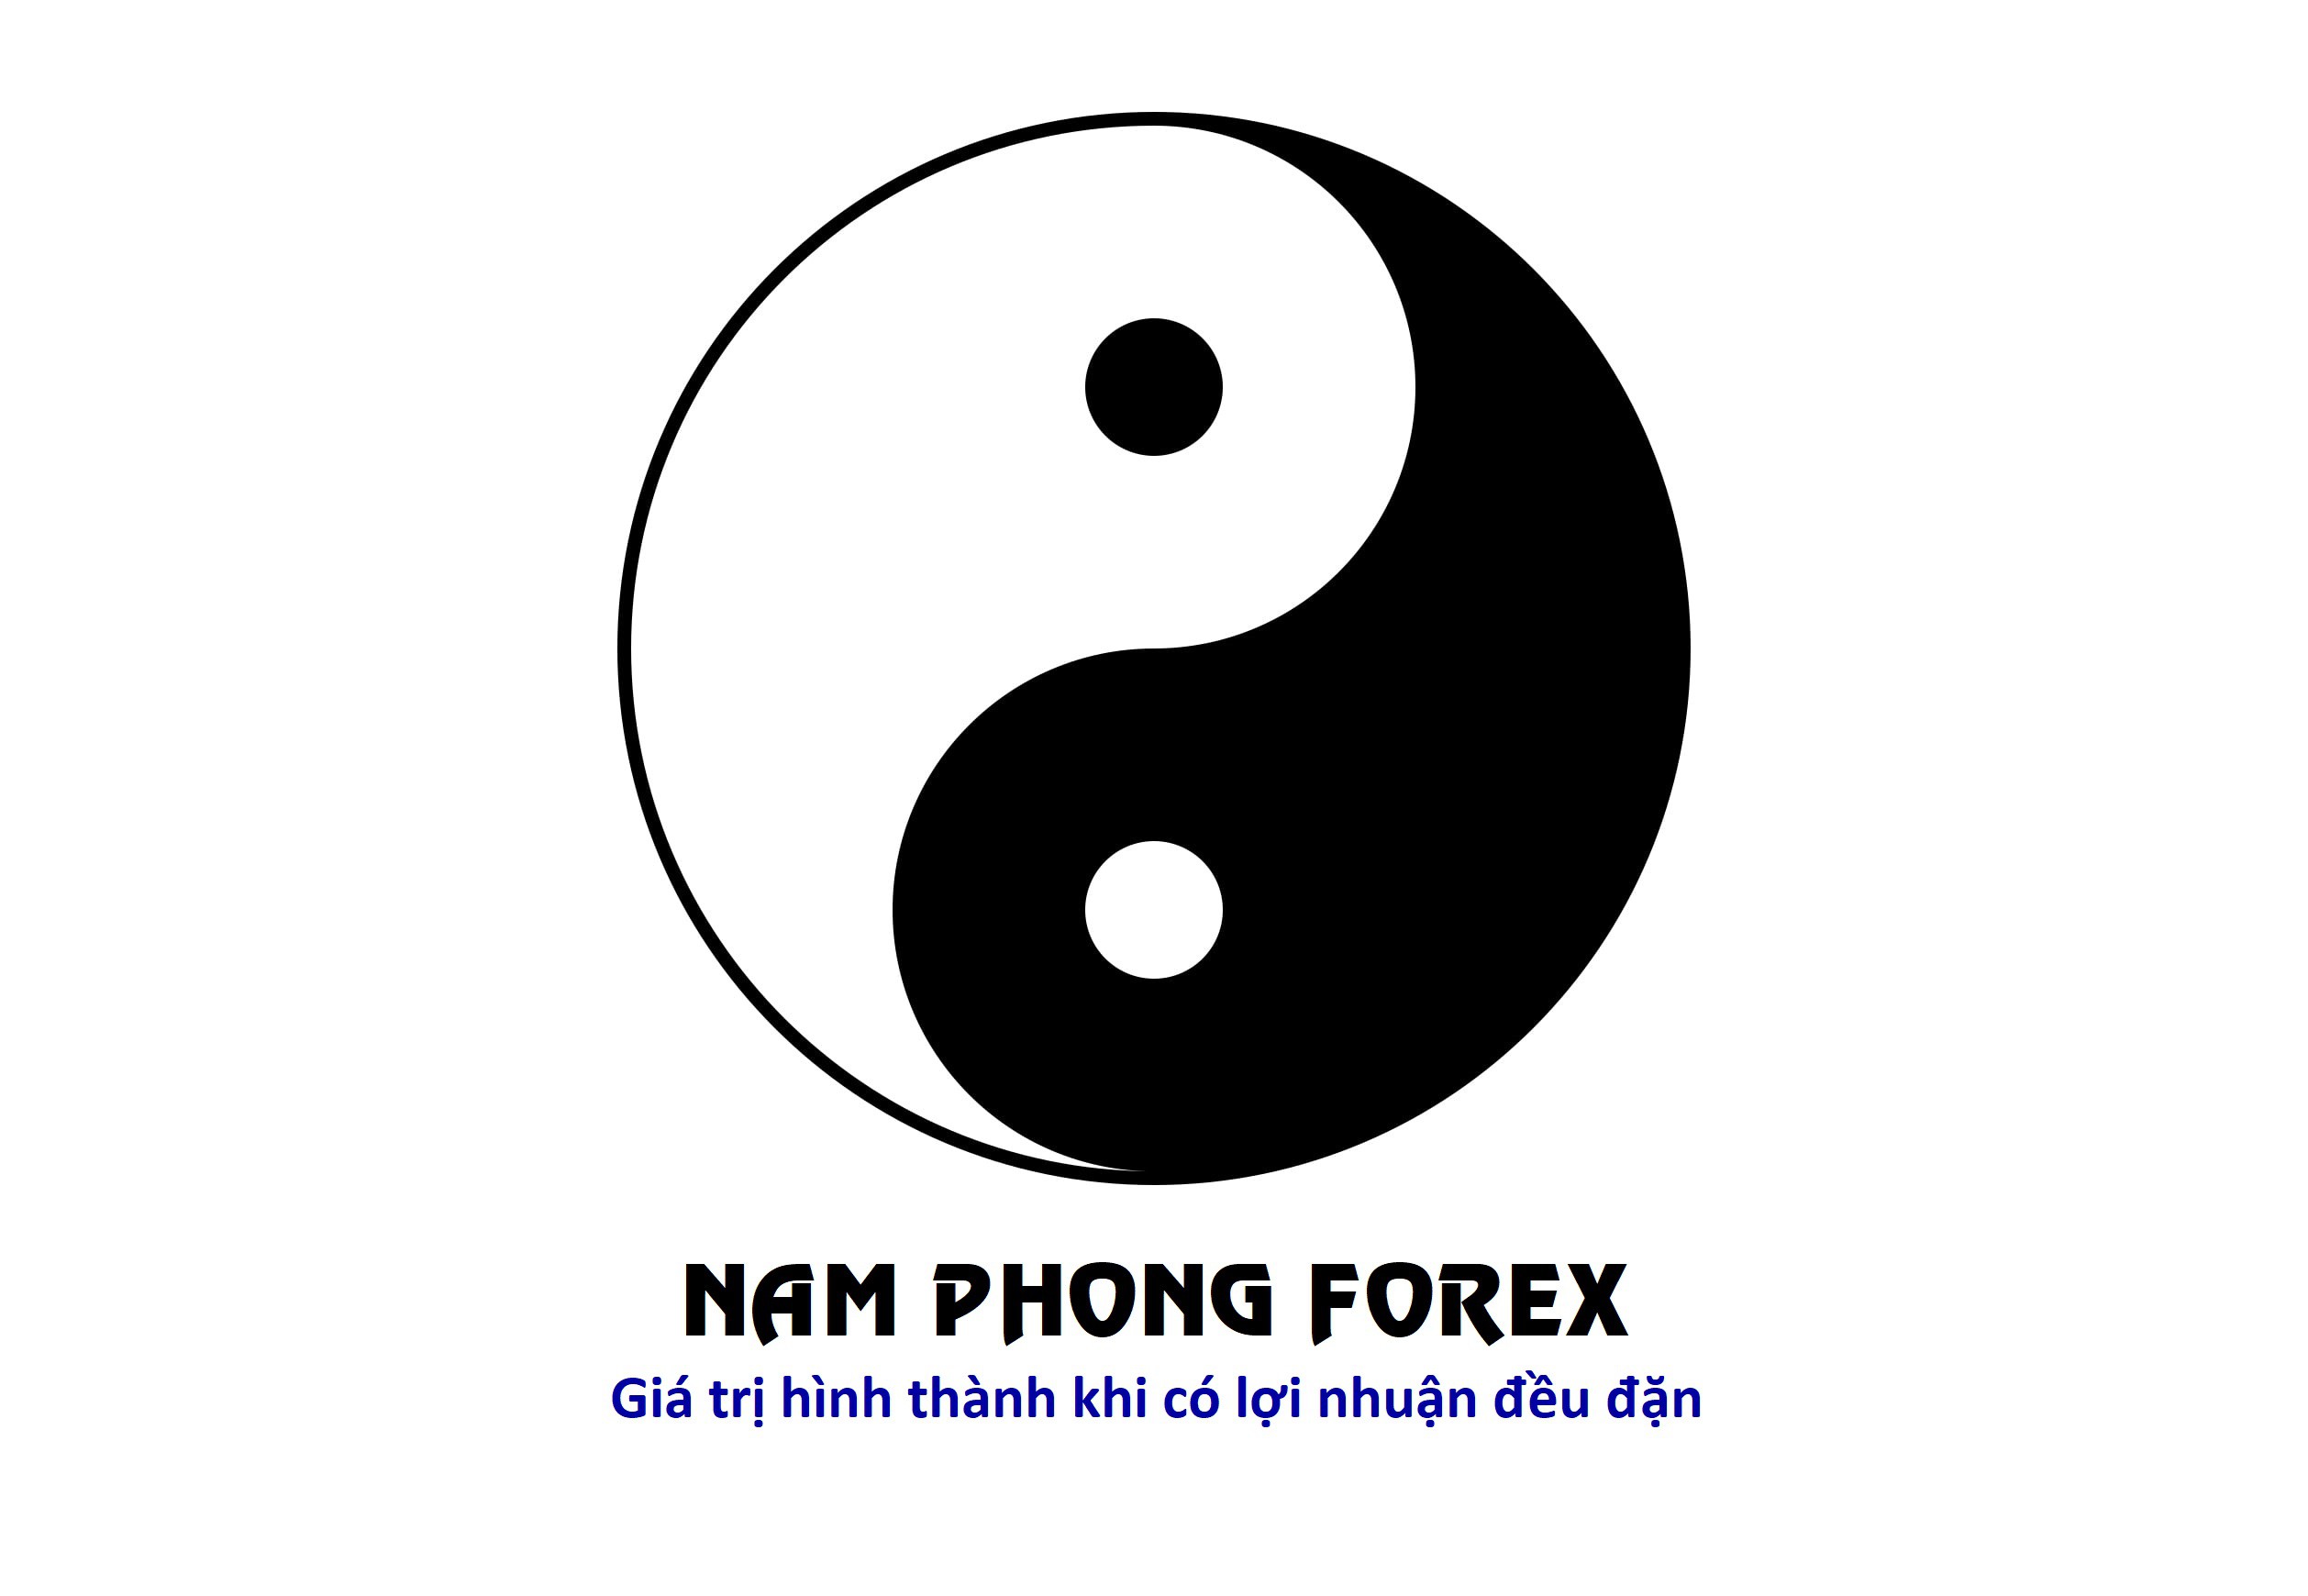 NAM PHONG FOREX